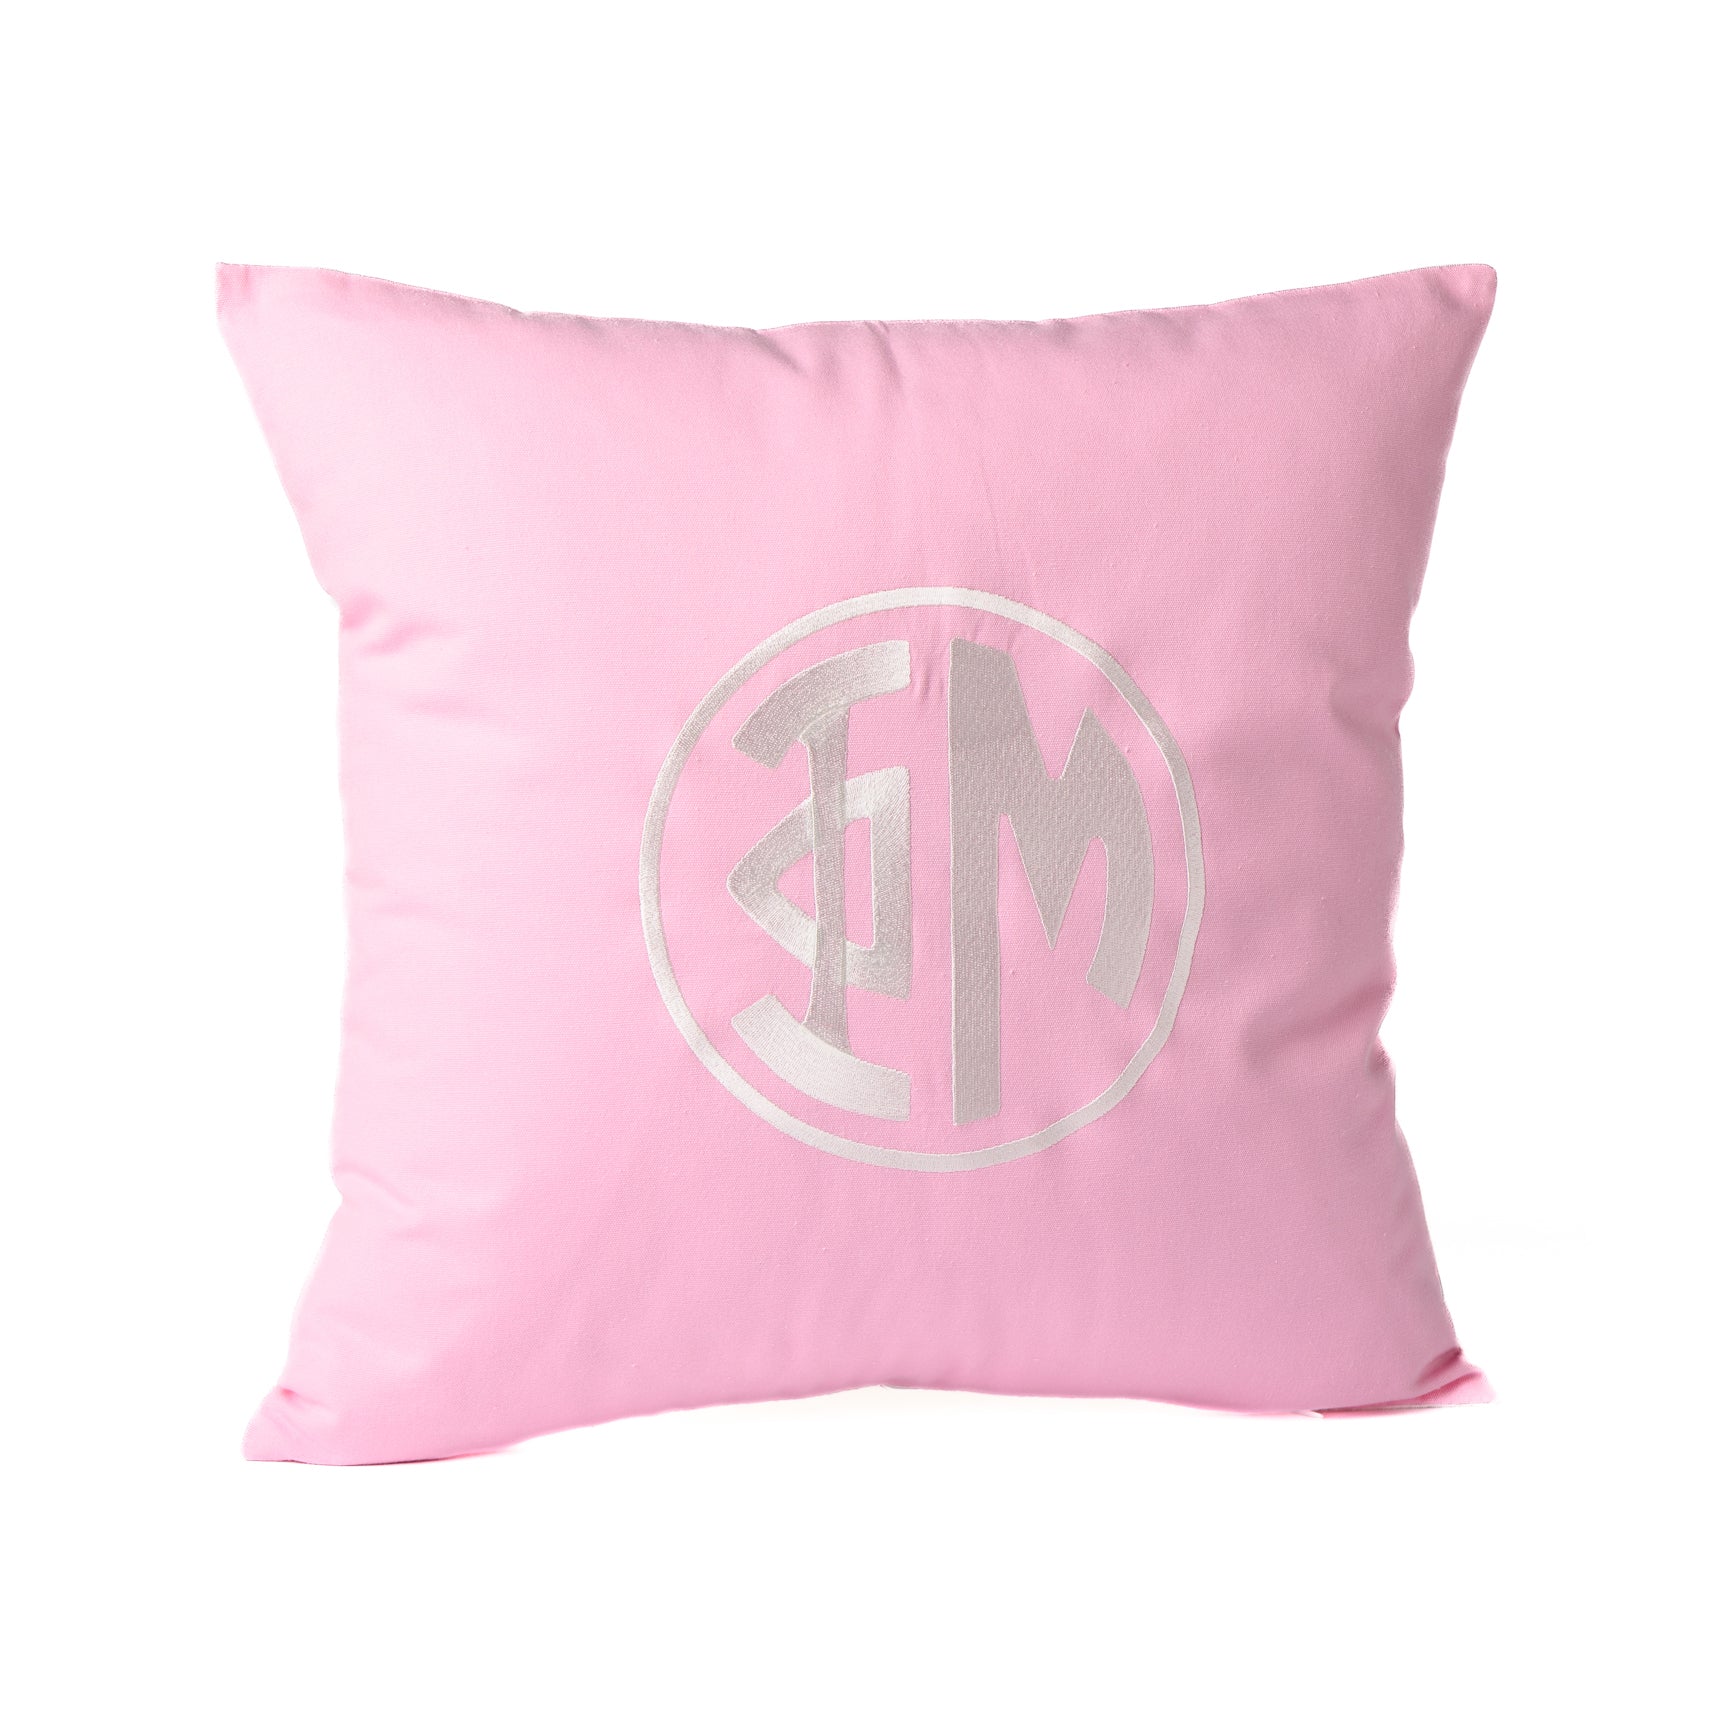 Circle Monogram Pillow